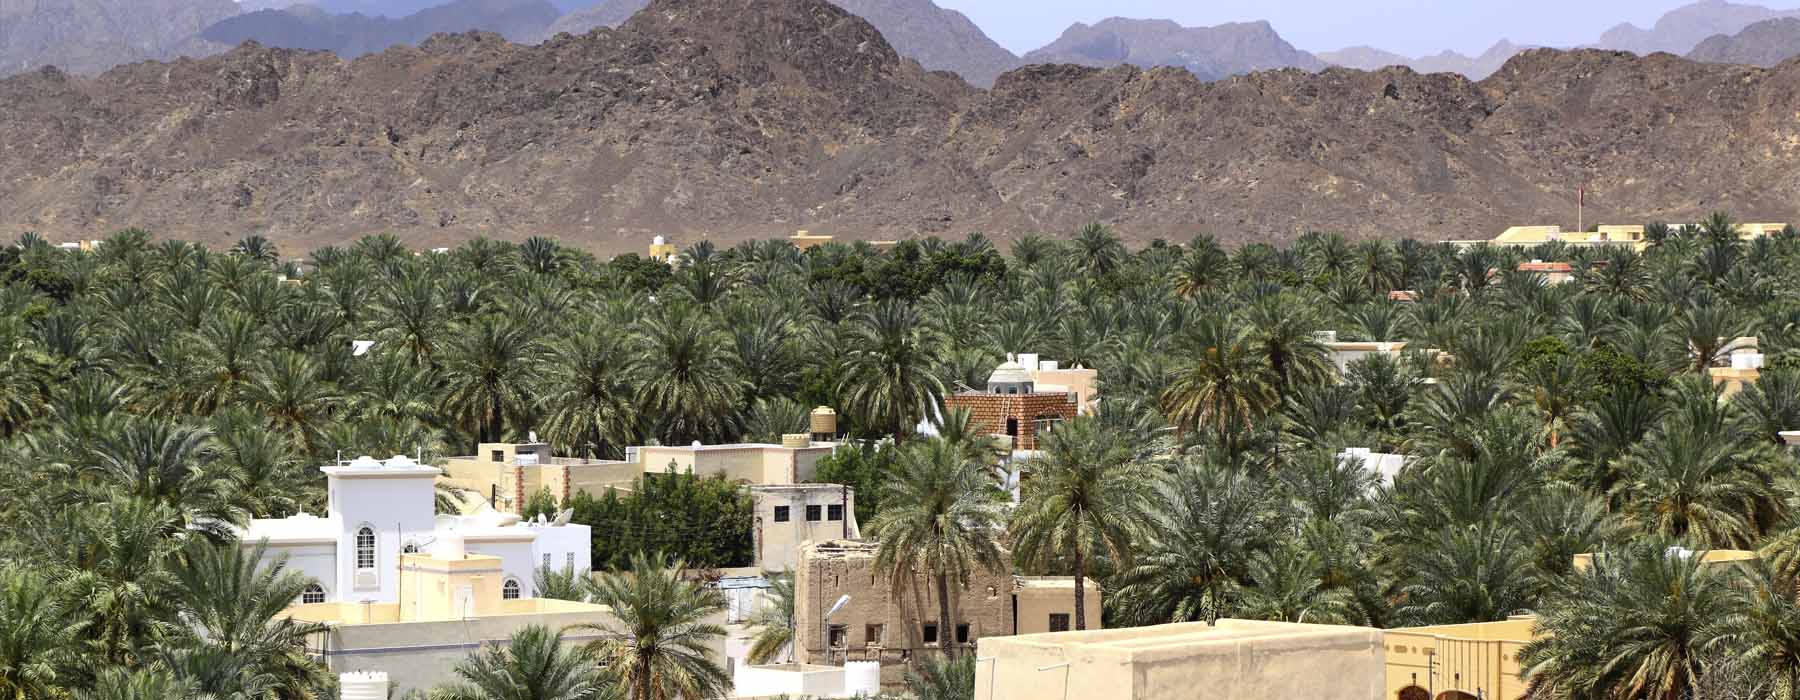 Oman<br class="hidden-md hidden-lg" /> Winter Sun Holidays